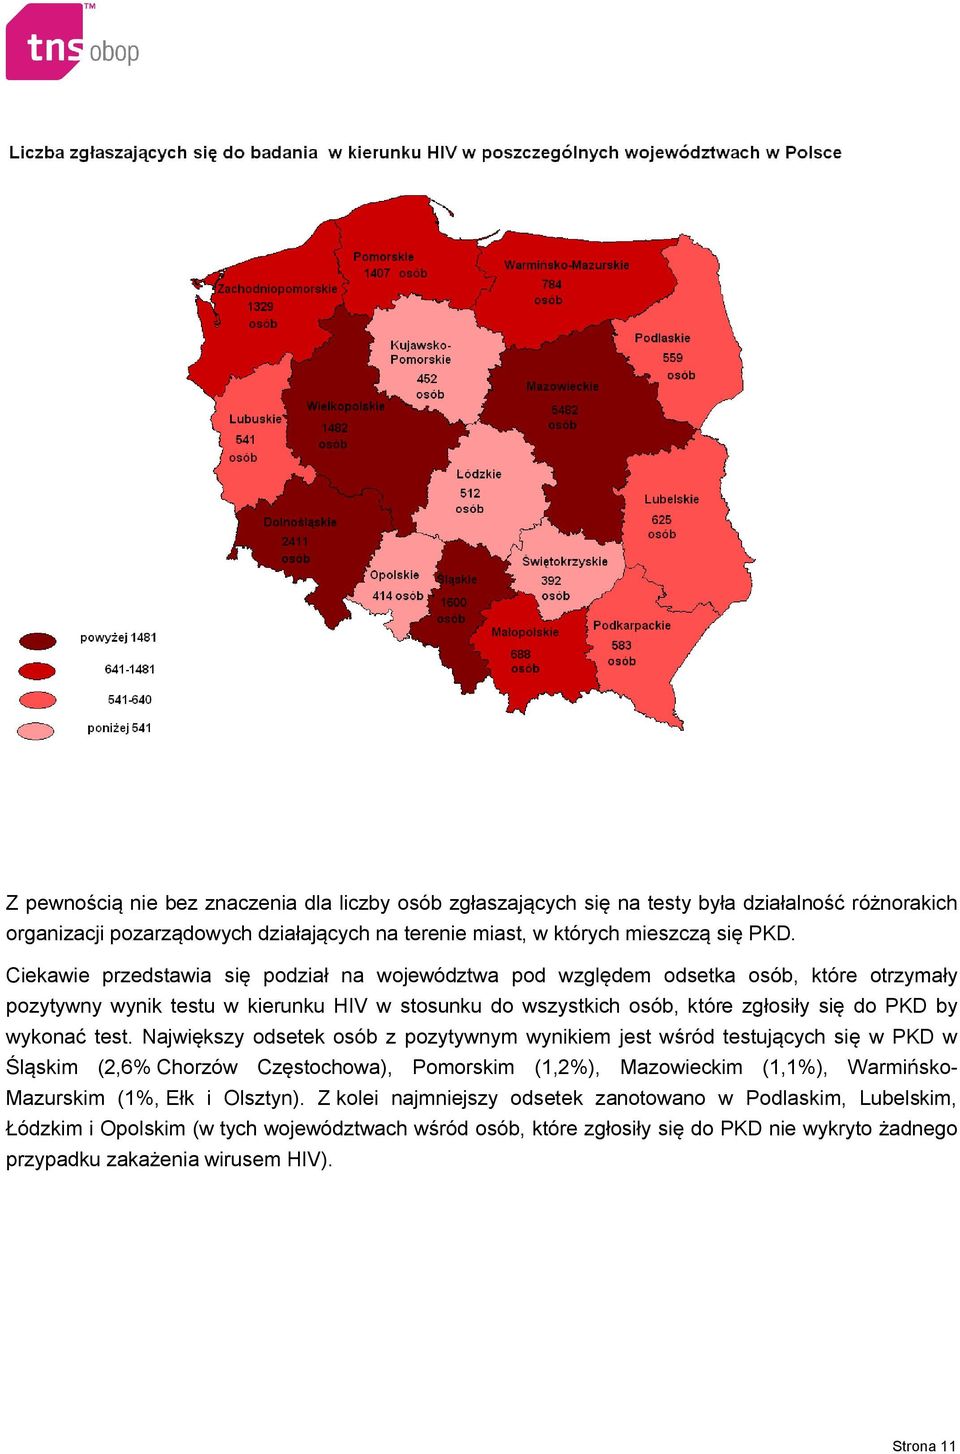 test. Największy odsetek osób z pozytywnym wynikiem jest wśród testujących się w PKD w Śląskim (2,6% Chorzów Częstochowa), Pomorskim (1,2%), Mazowieckim (1,1%), Warmińsko- Mazurskim (1%, Ełk i